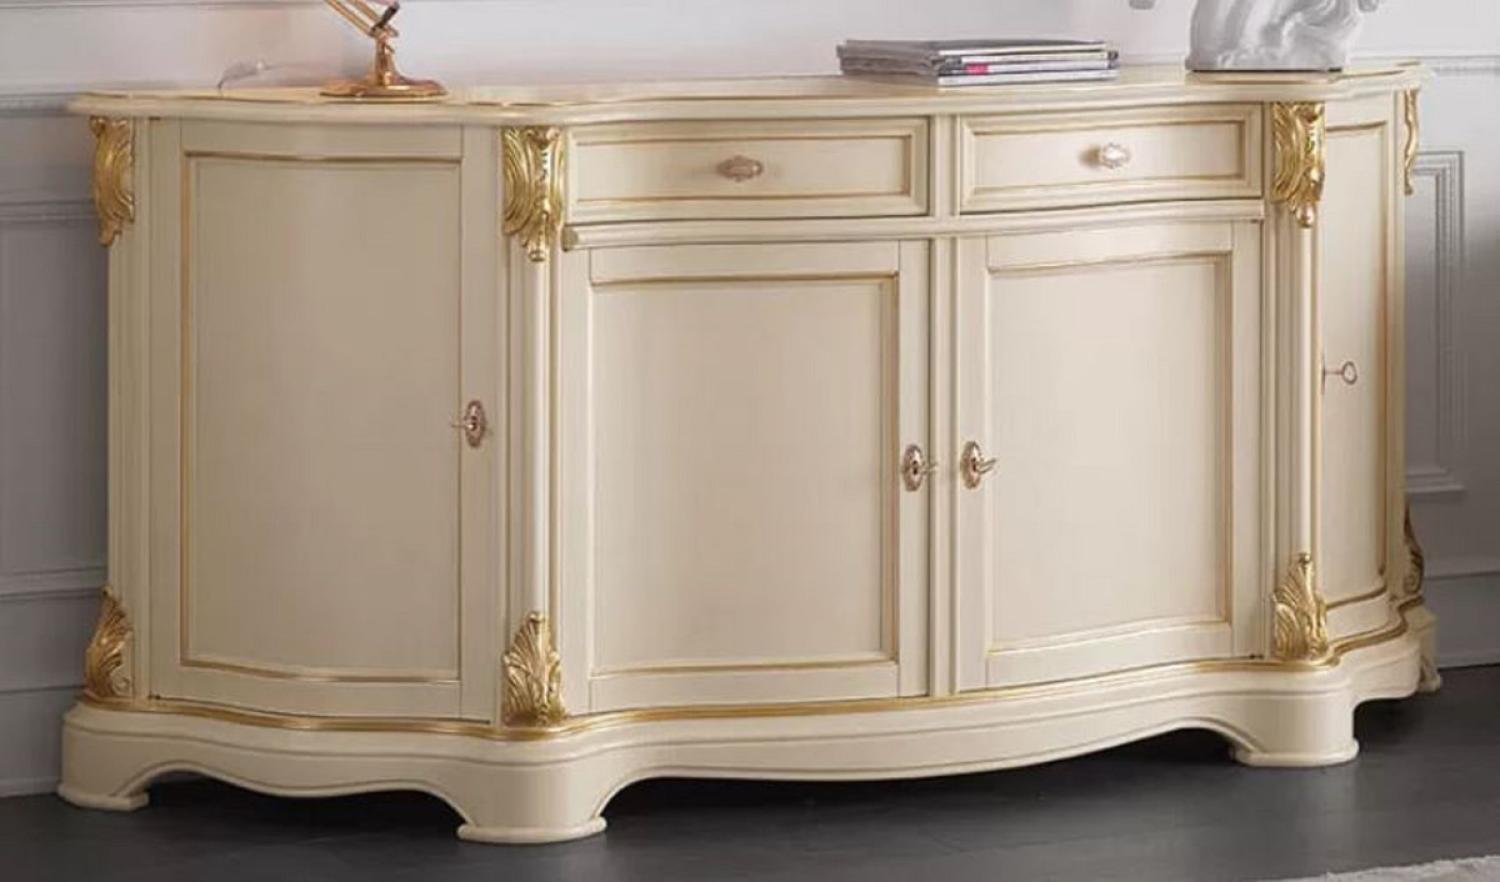 Casa Padrino Luxus Barock Sideboard Cremefarben / Gold - Prunkvoller Massivholz Schrank mit 4 Türen und 2 Schubladen - Barock Möbel - Luxus Qualität - Made in Italy Bild 1